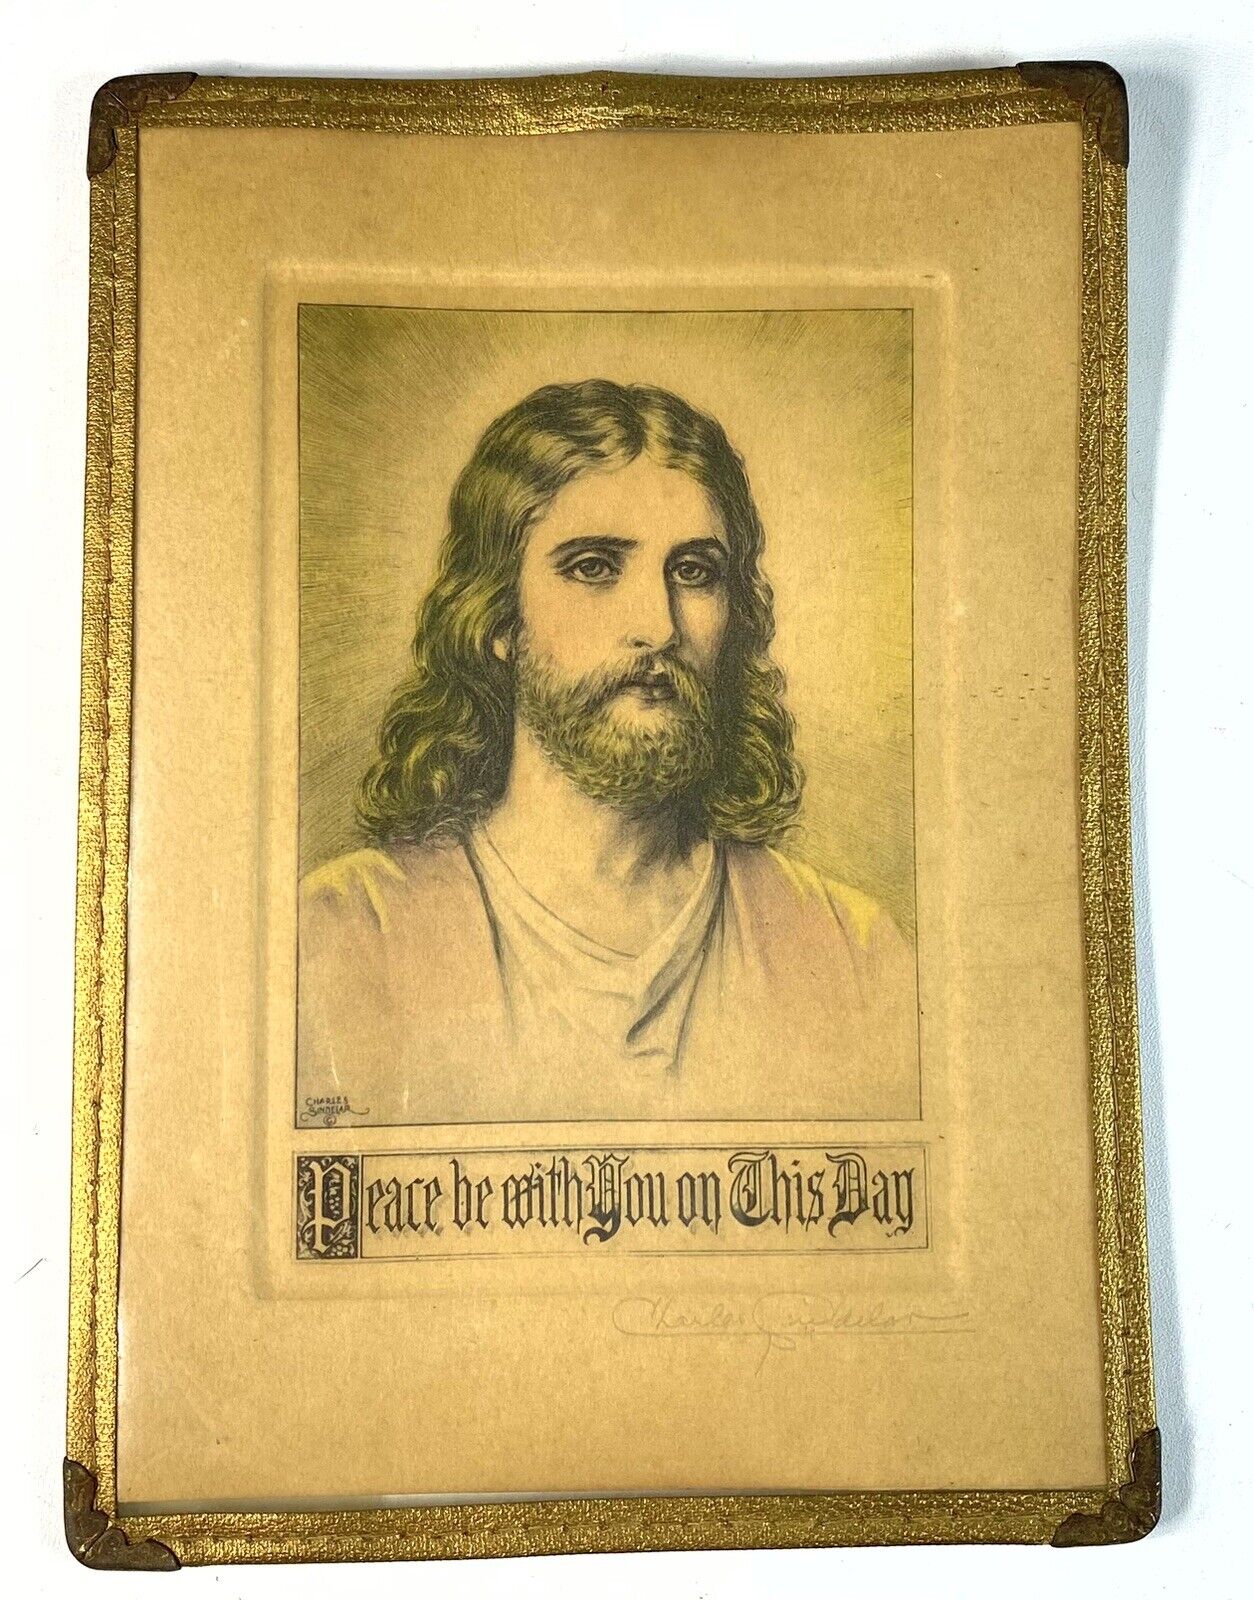 RARE Vintage Saint Germain Jesus Christ Framed Print Charles Sindelar Signed